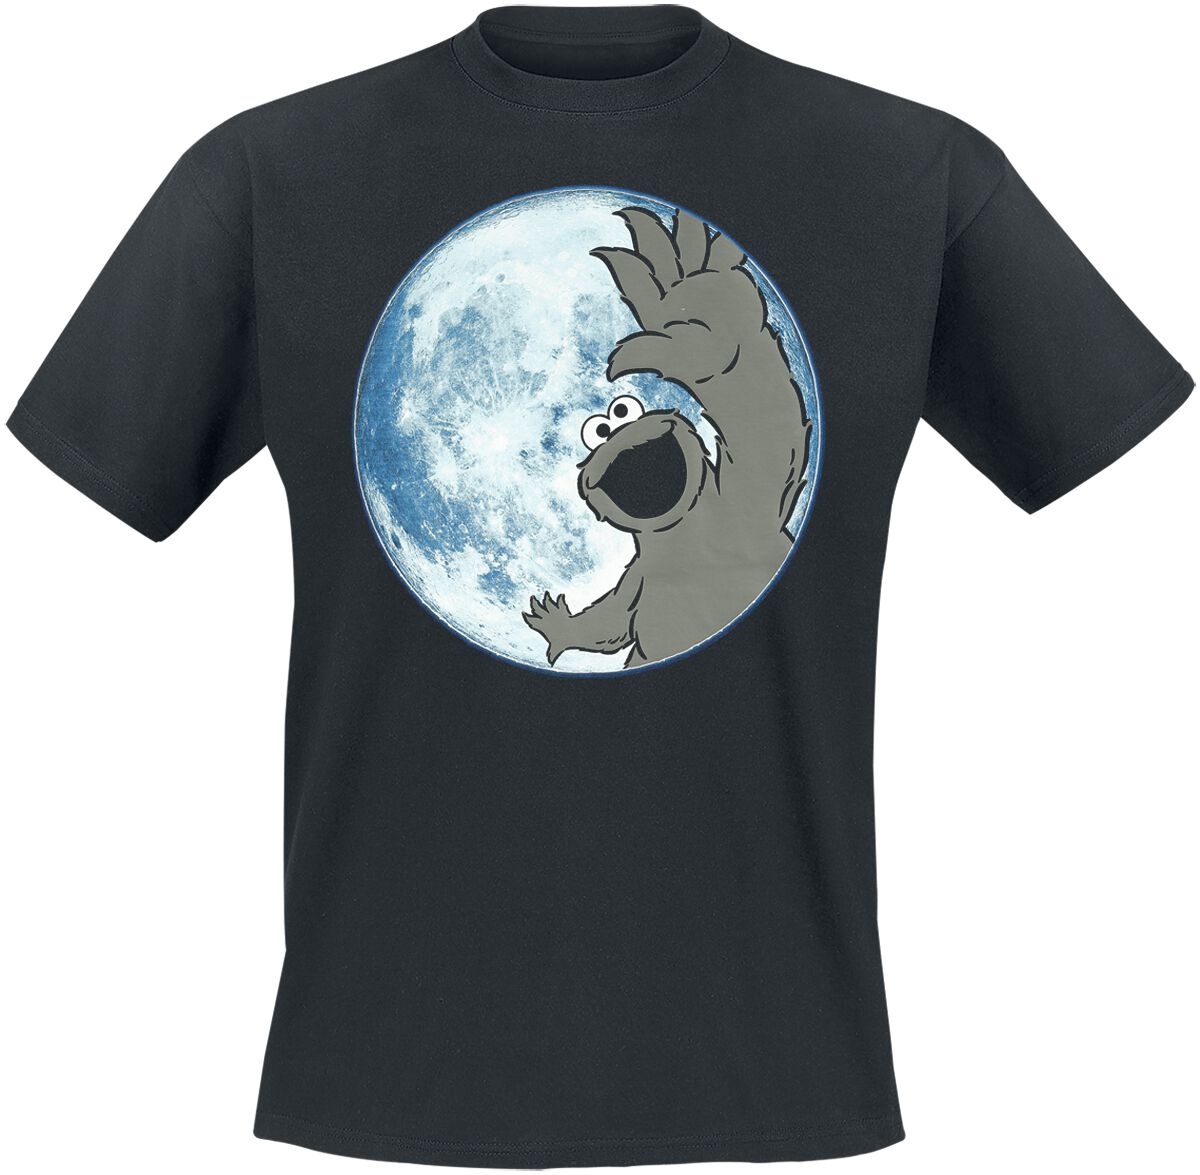 Sesamstraße T-Shirt - Moon - Cookie Monster - S bis 3XL - für Männer - Größe S - schwarz  - EMP exklusives Merchandise!